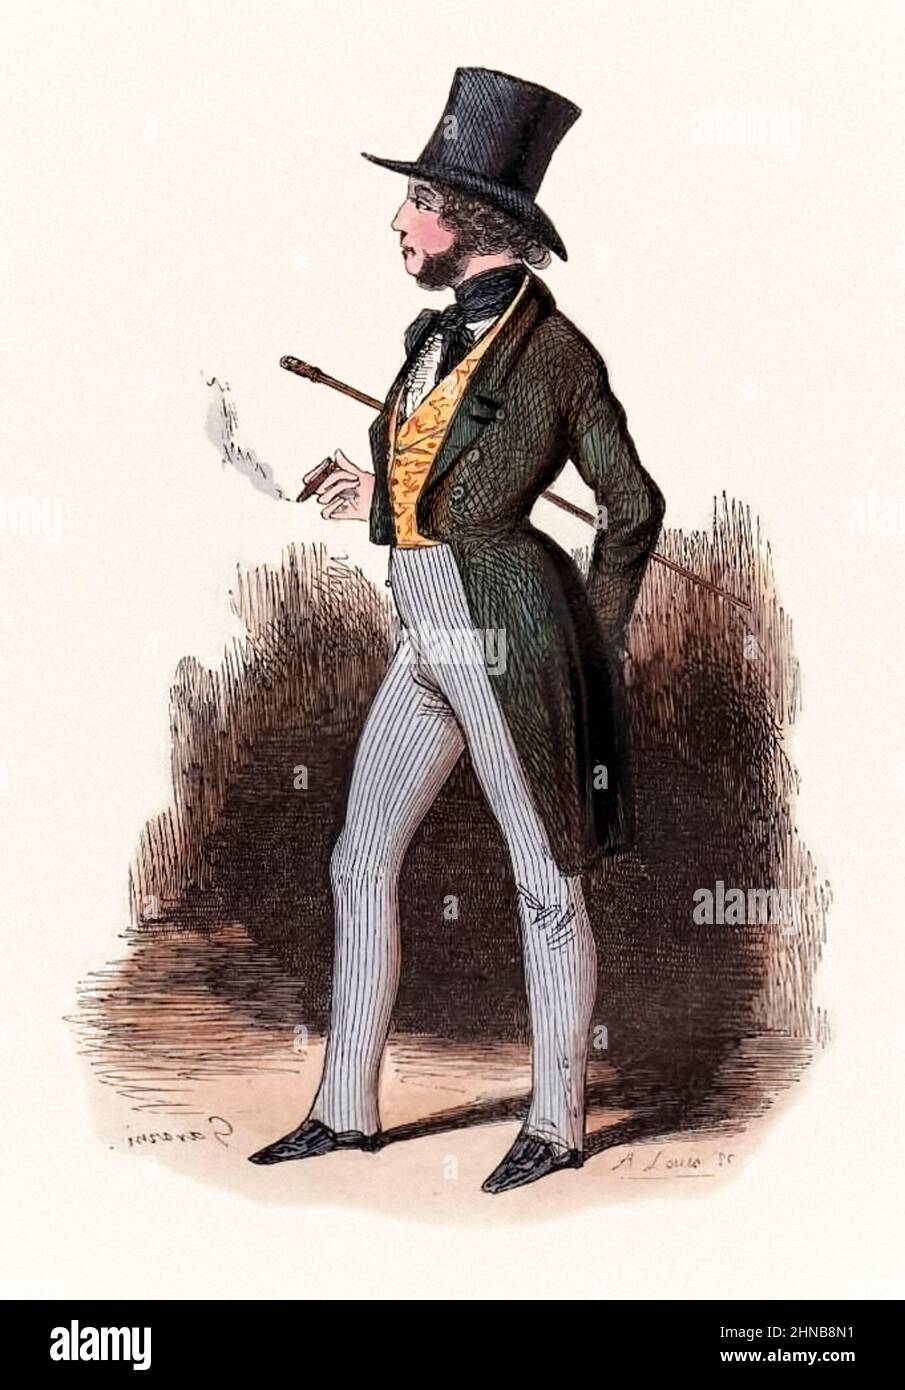 Ilustración de “Le Sportsman Parisien” [El deportista parisino] de Rodolphe d'Ornano (1861-1865) de Paul Gavarni (1804-1866). Fotografía de un grabado original de color a mano publicado en 1840. Foto de stock